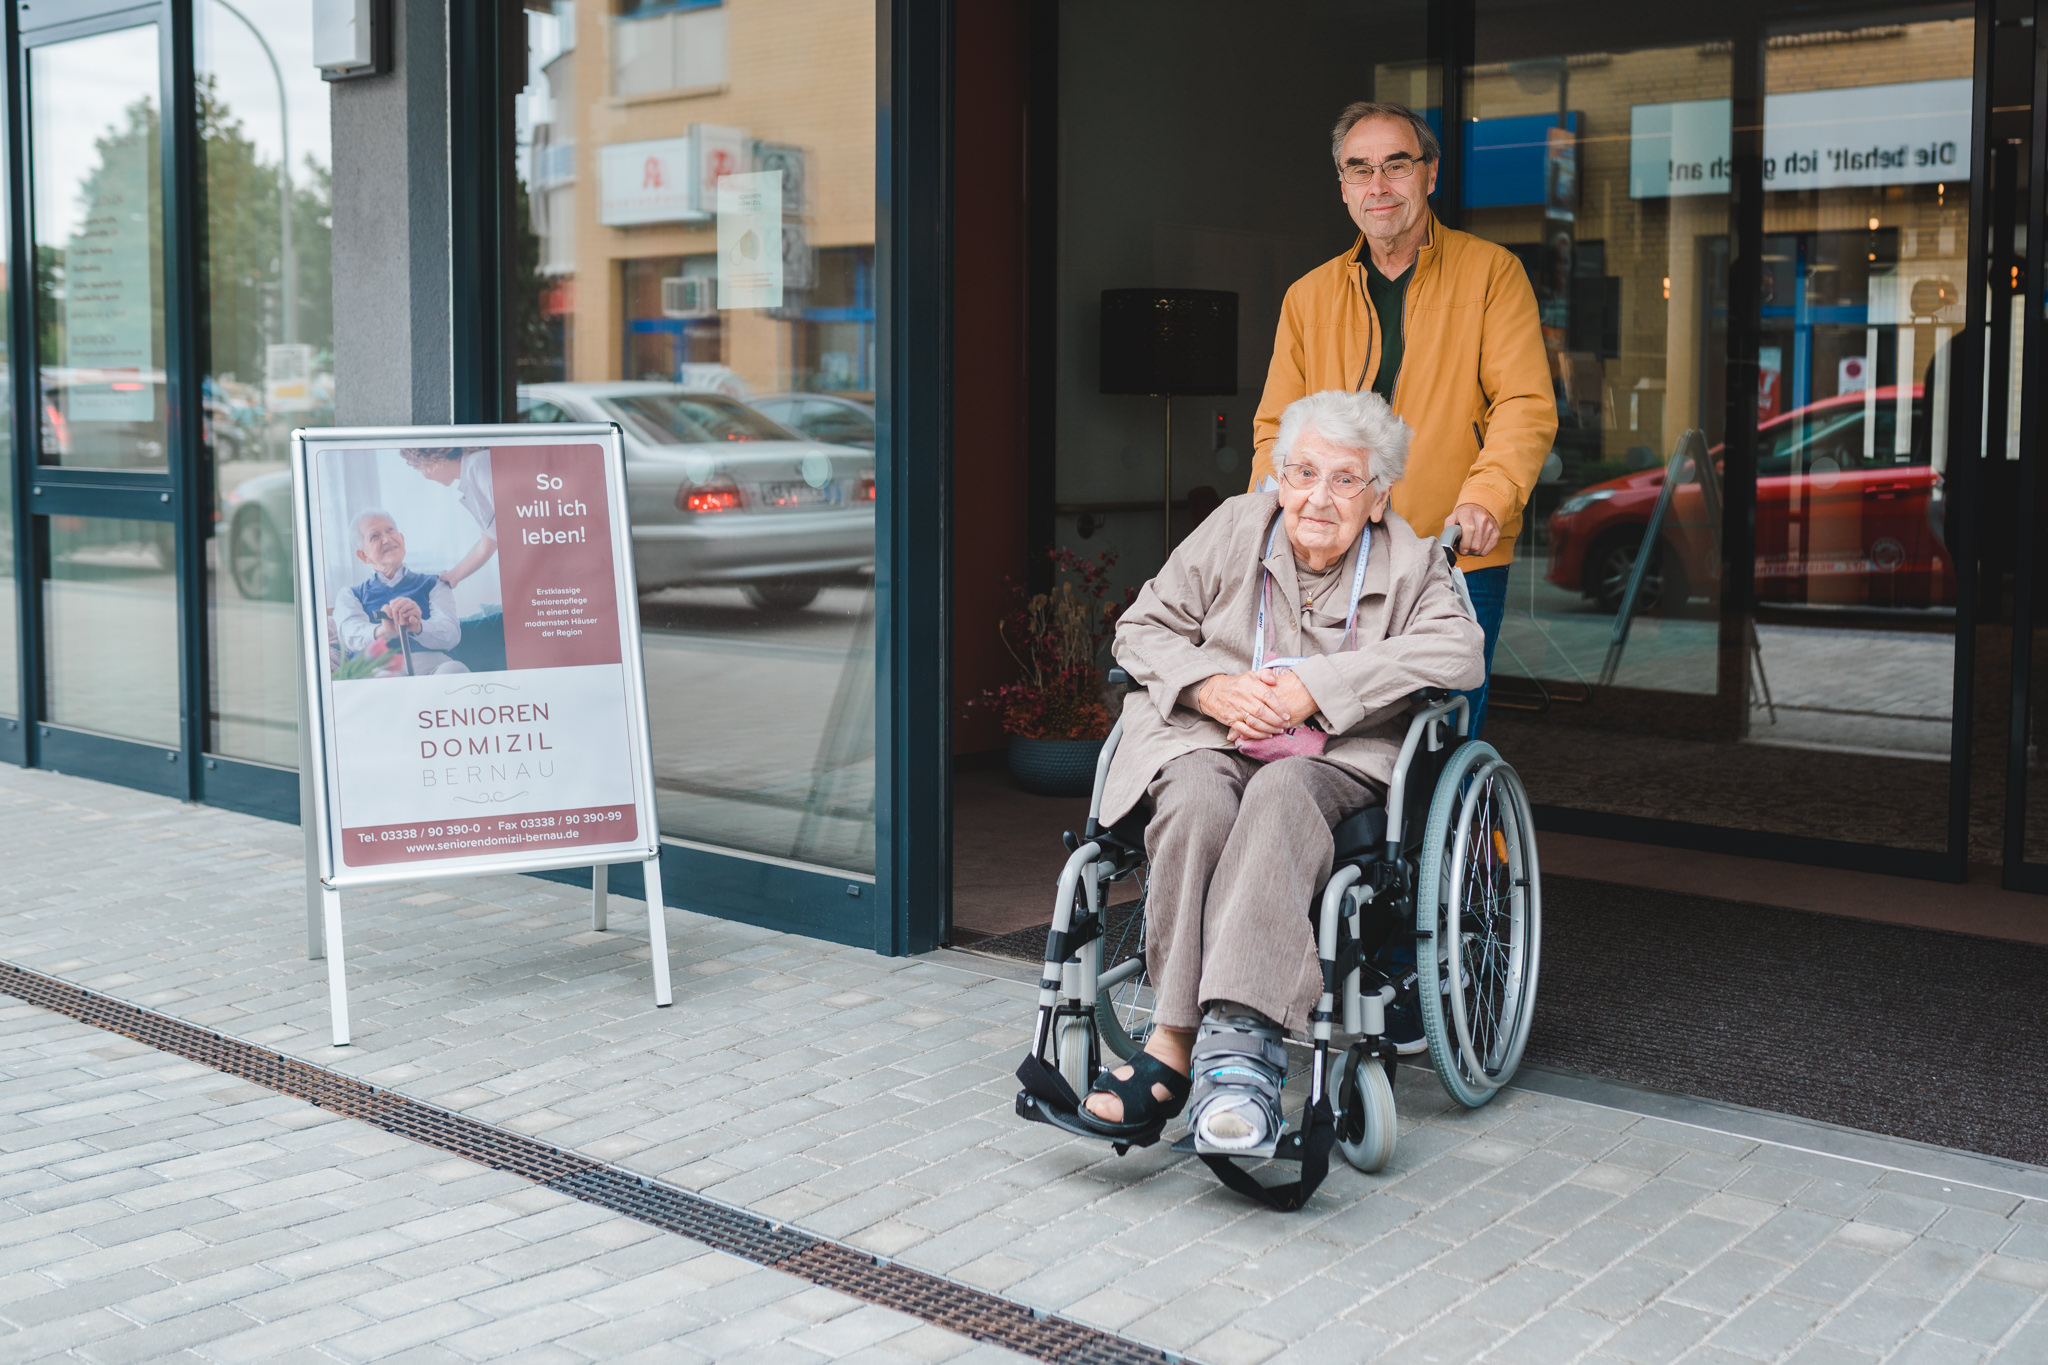 Angehöriger schiebt pflegebedürftige Mutter mit Rollstuhl aus Seniorendomizil